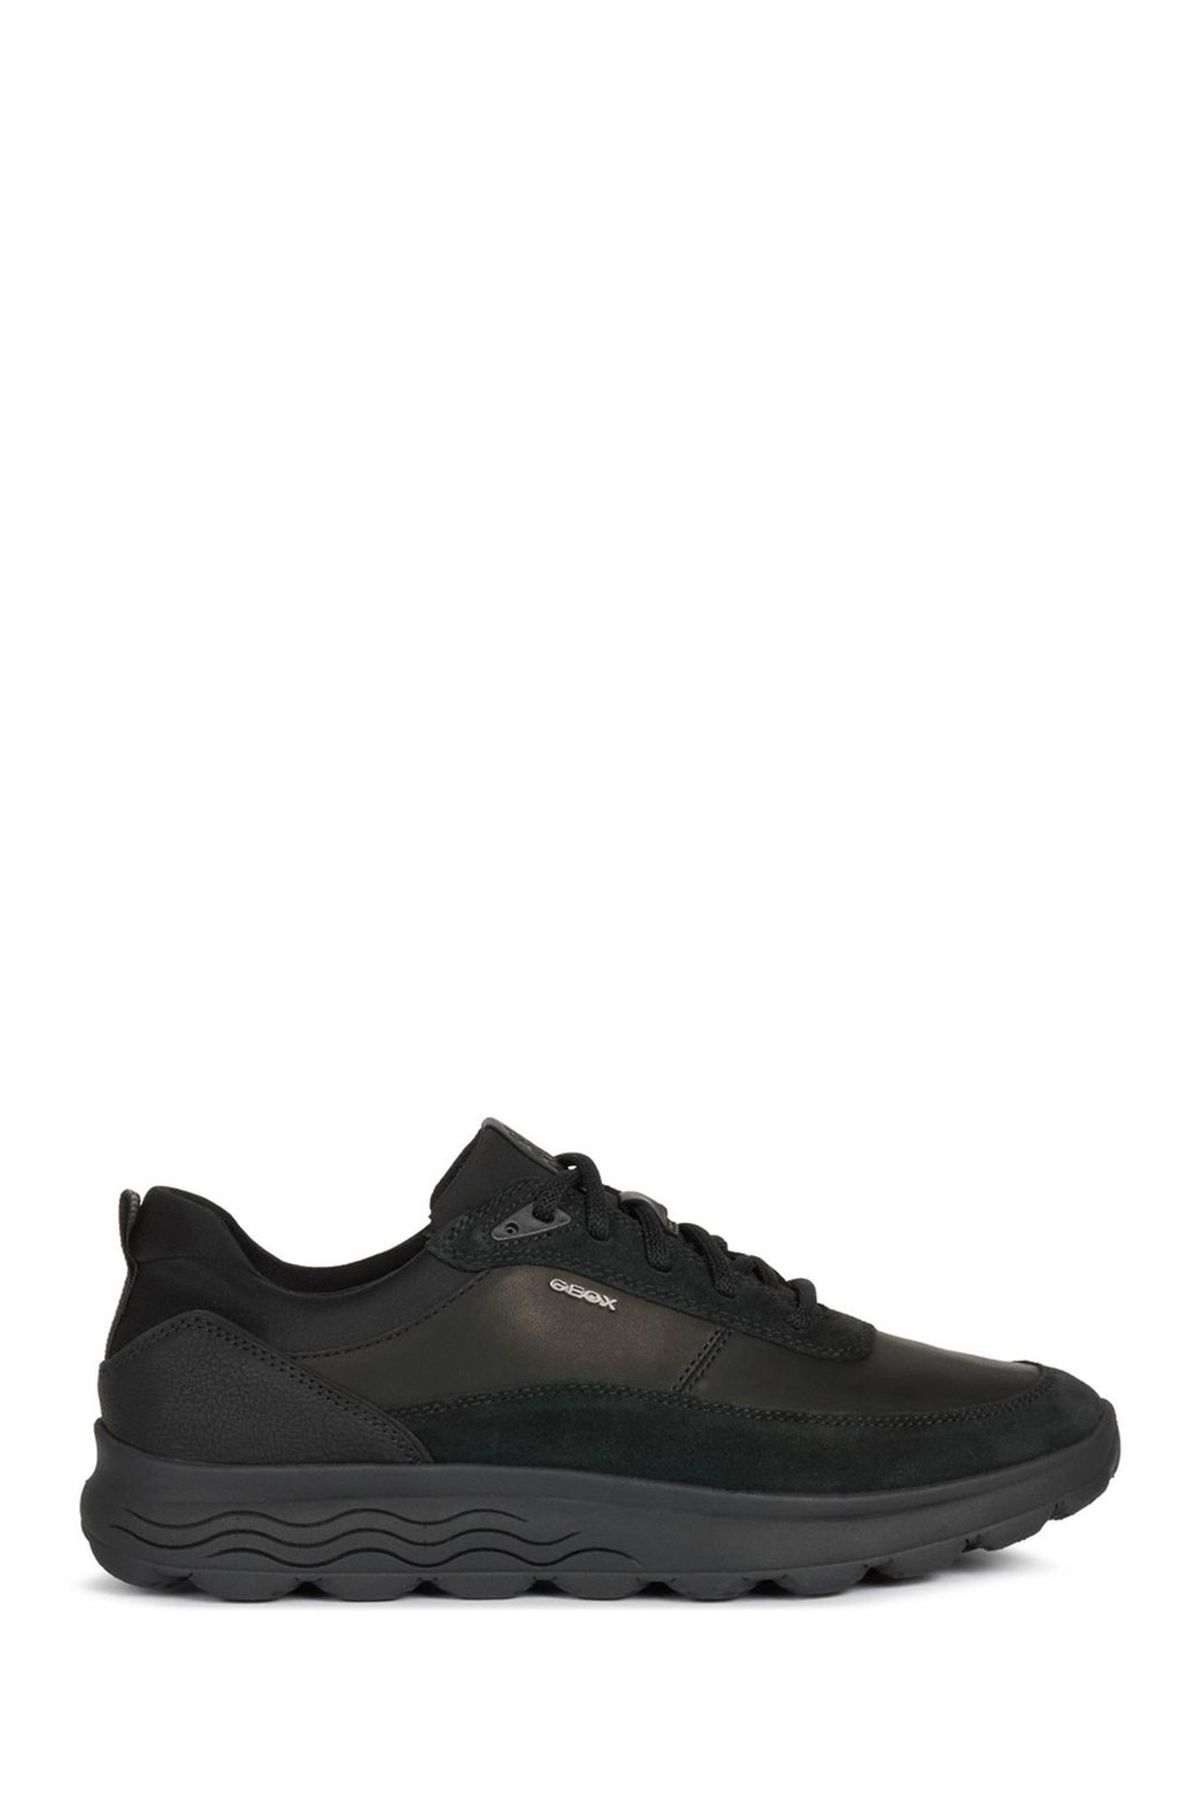 Geox Erkek Siyah Spherica Bağcıklı Deri Casual Sneaker U16bye08522c9997